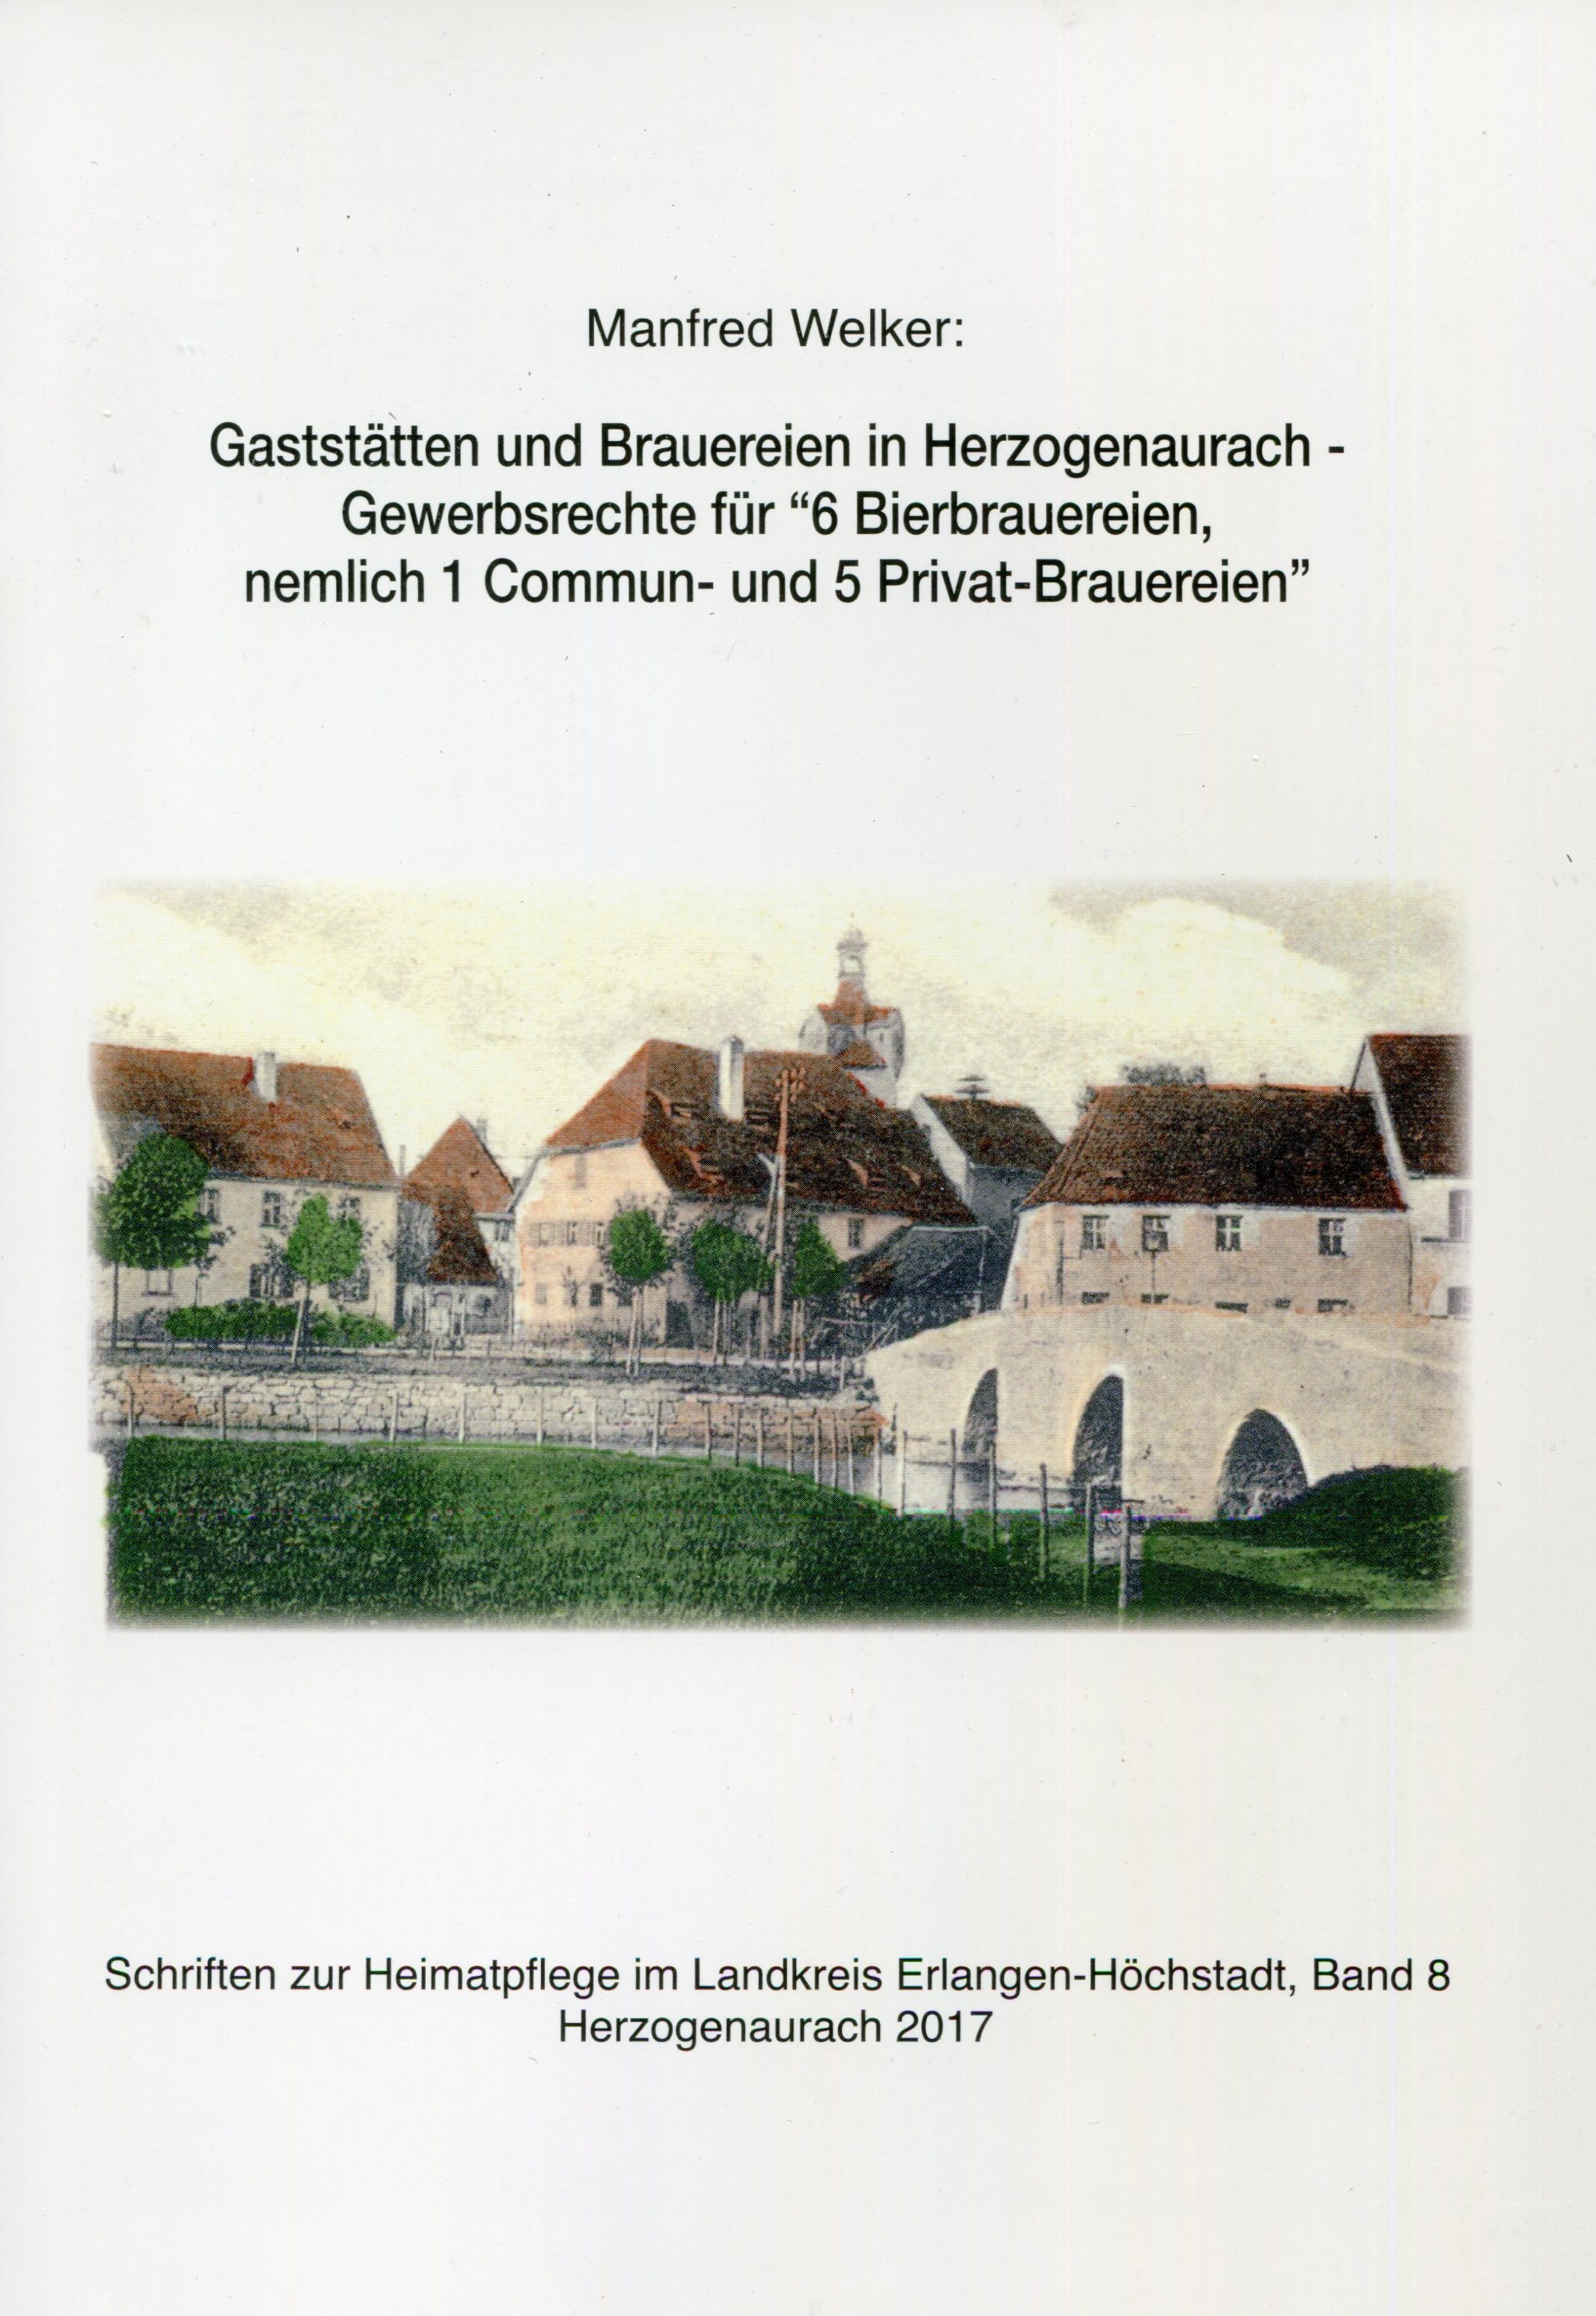 Heimatpflege ERH Schriften Band 8: Herzogenaurach Brauwesen - 6,50 Euro